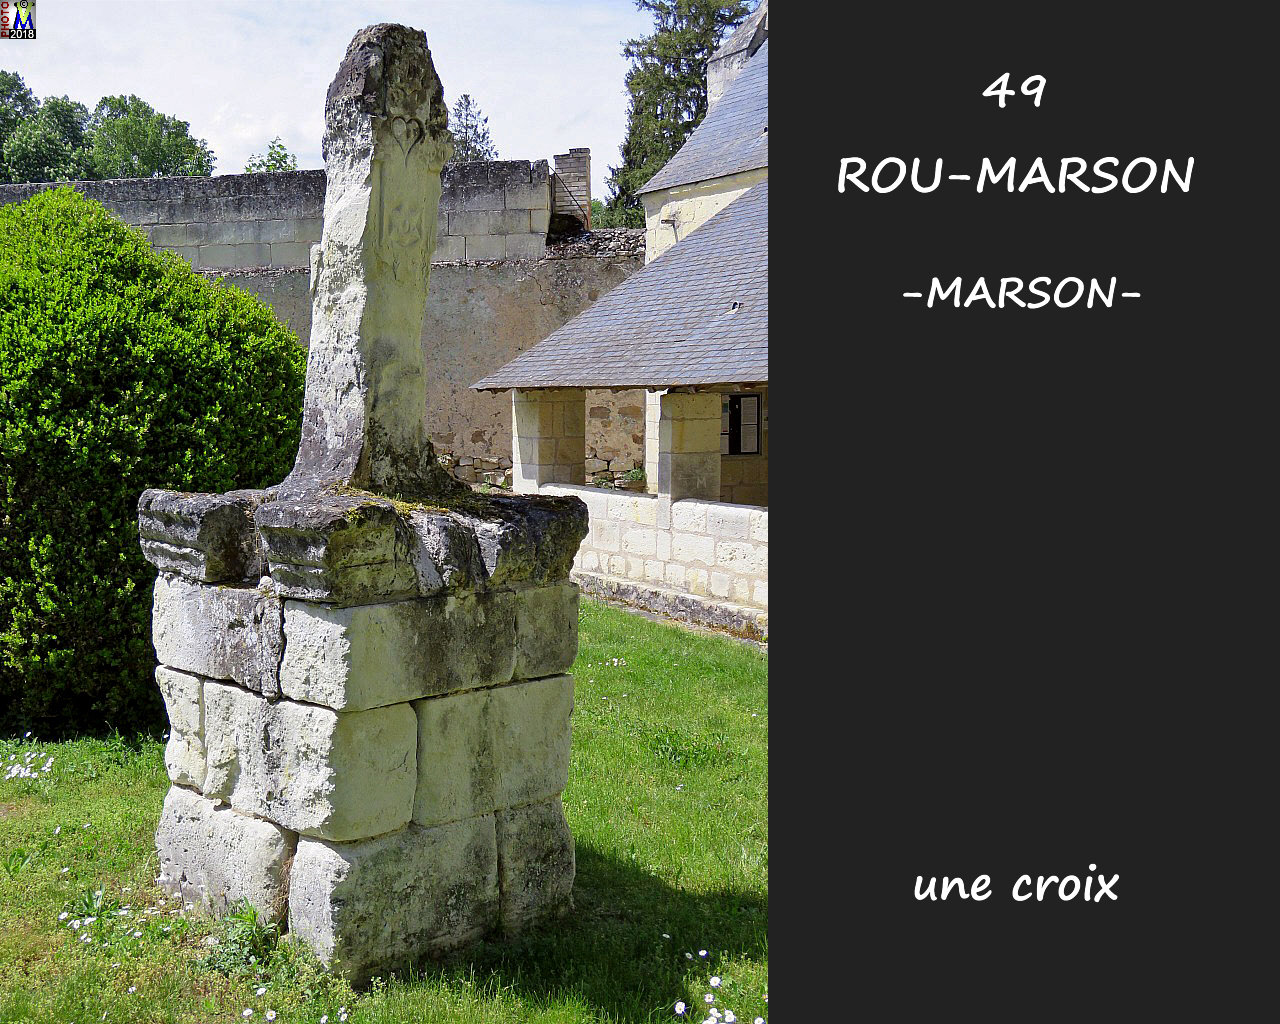 49ROU-MARSONzMARSON_eglise_300.jpg